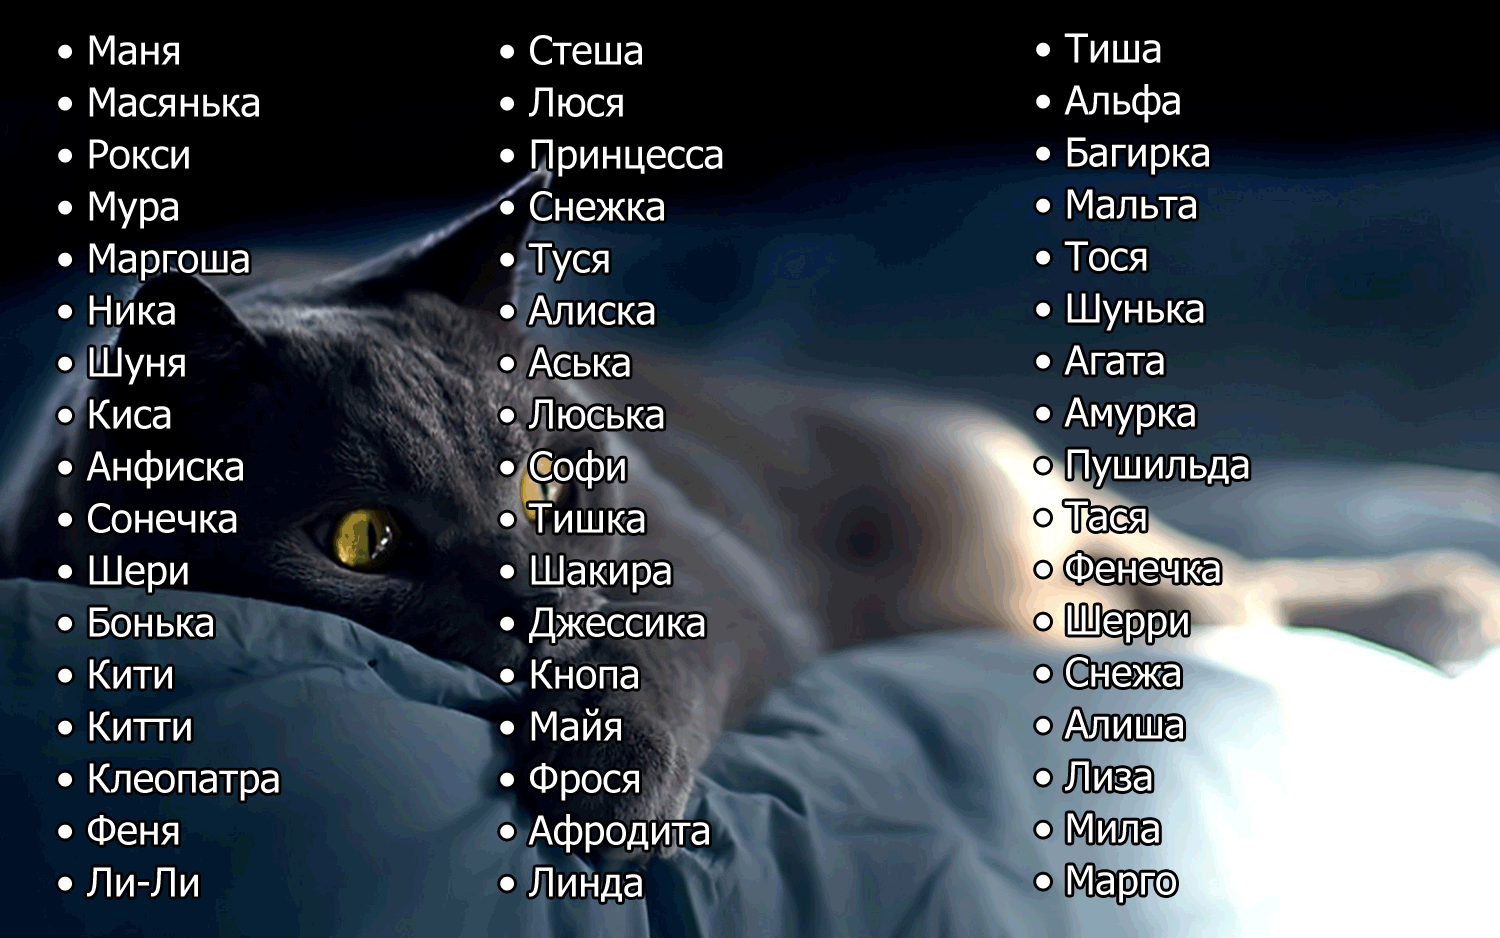 Сборник имен кошек девочек на буквы Ш и Щ с расшифровкой значений имен и страны происхождения